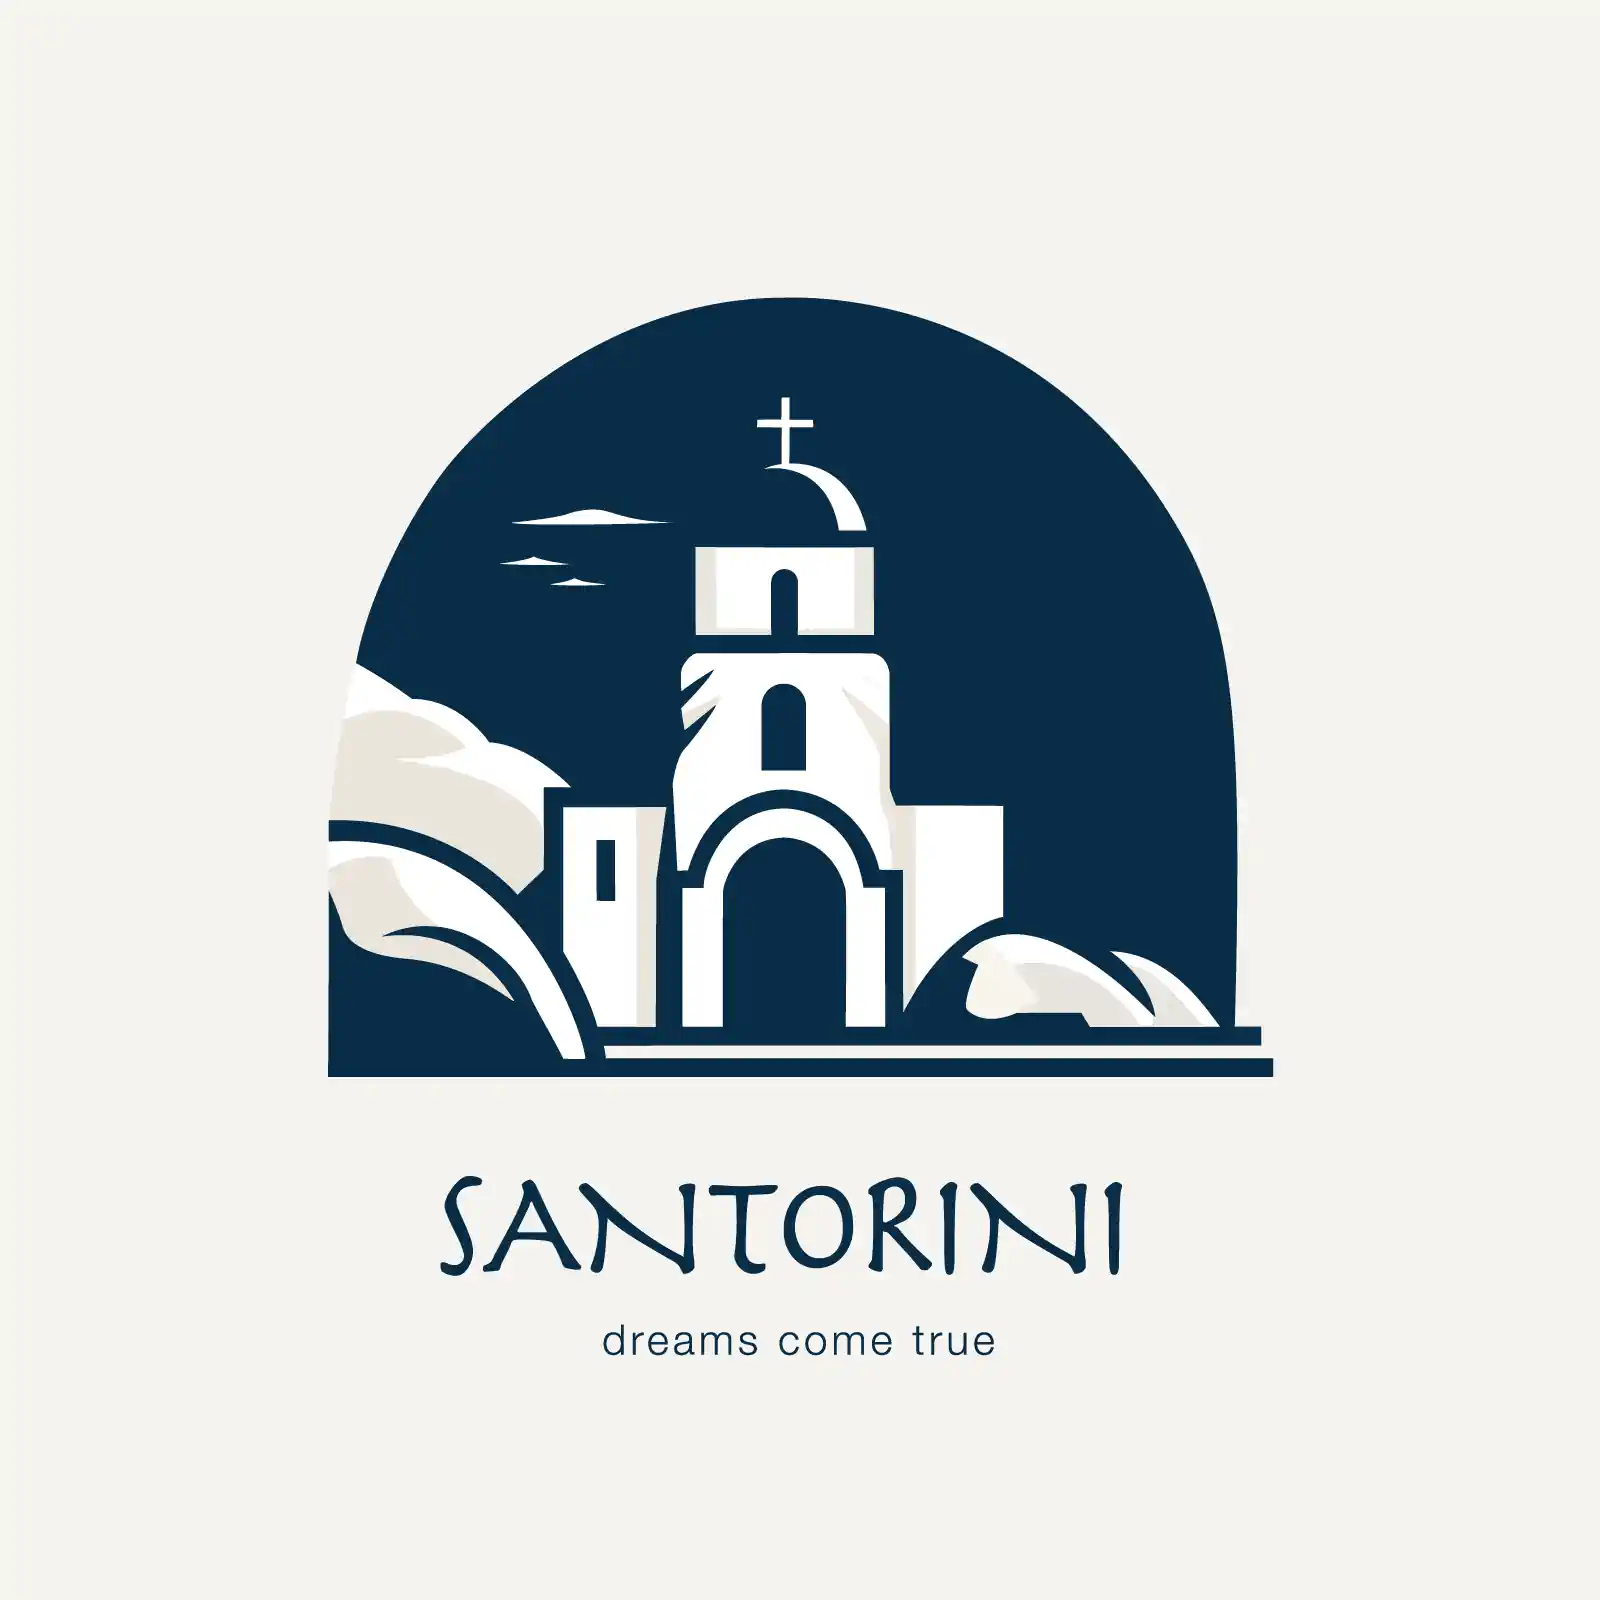 Santorini island logo